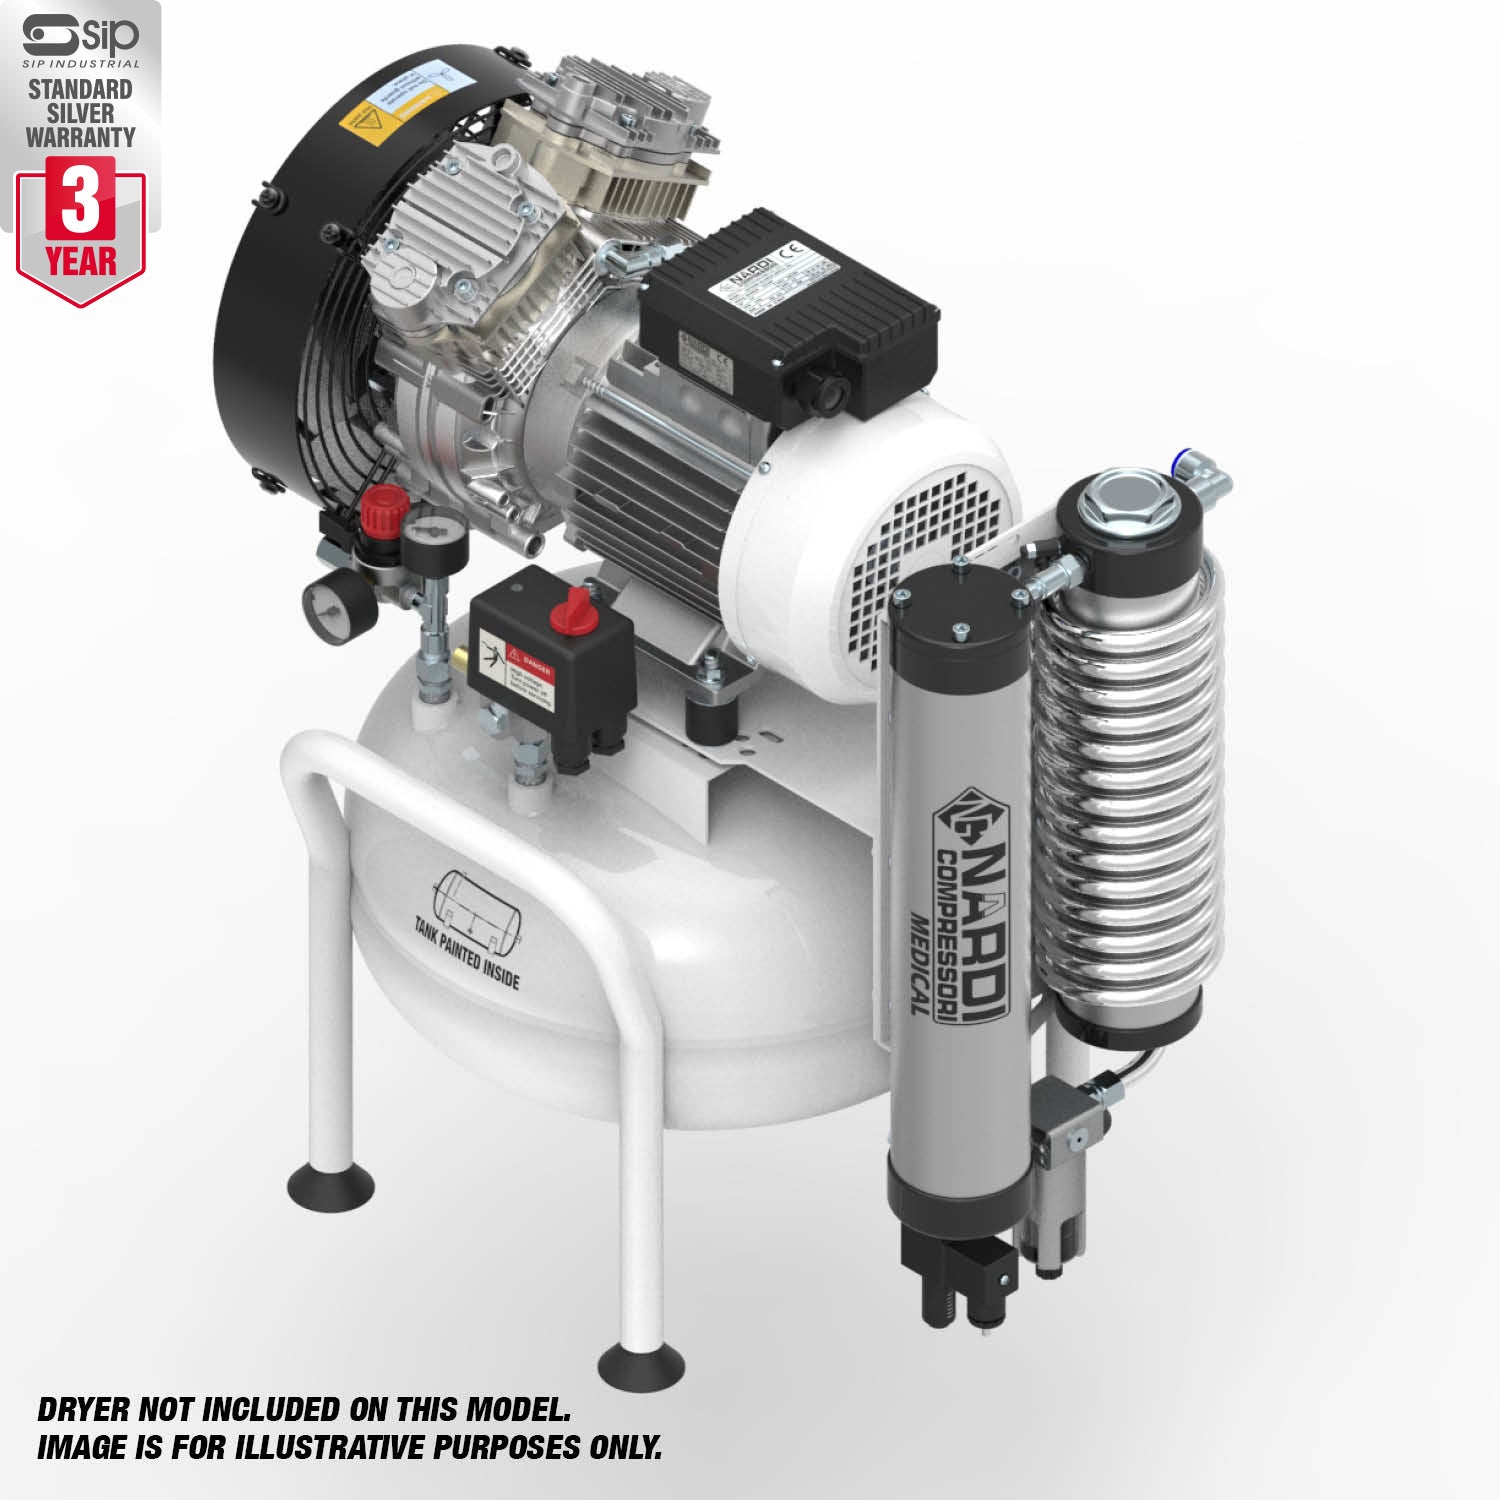 NARDI EXTREME 2V 1.50HP 25ltr Compressor